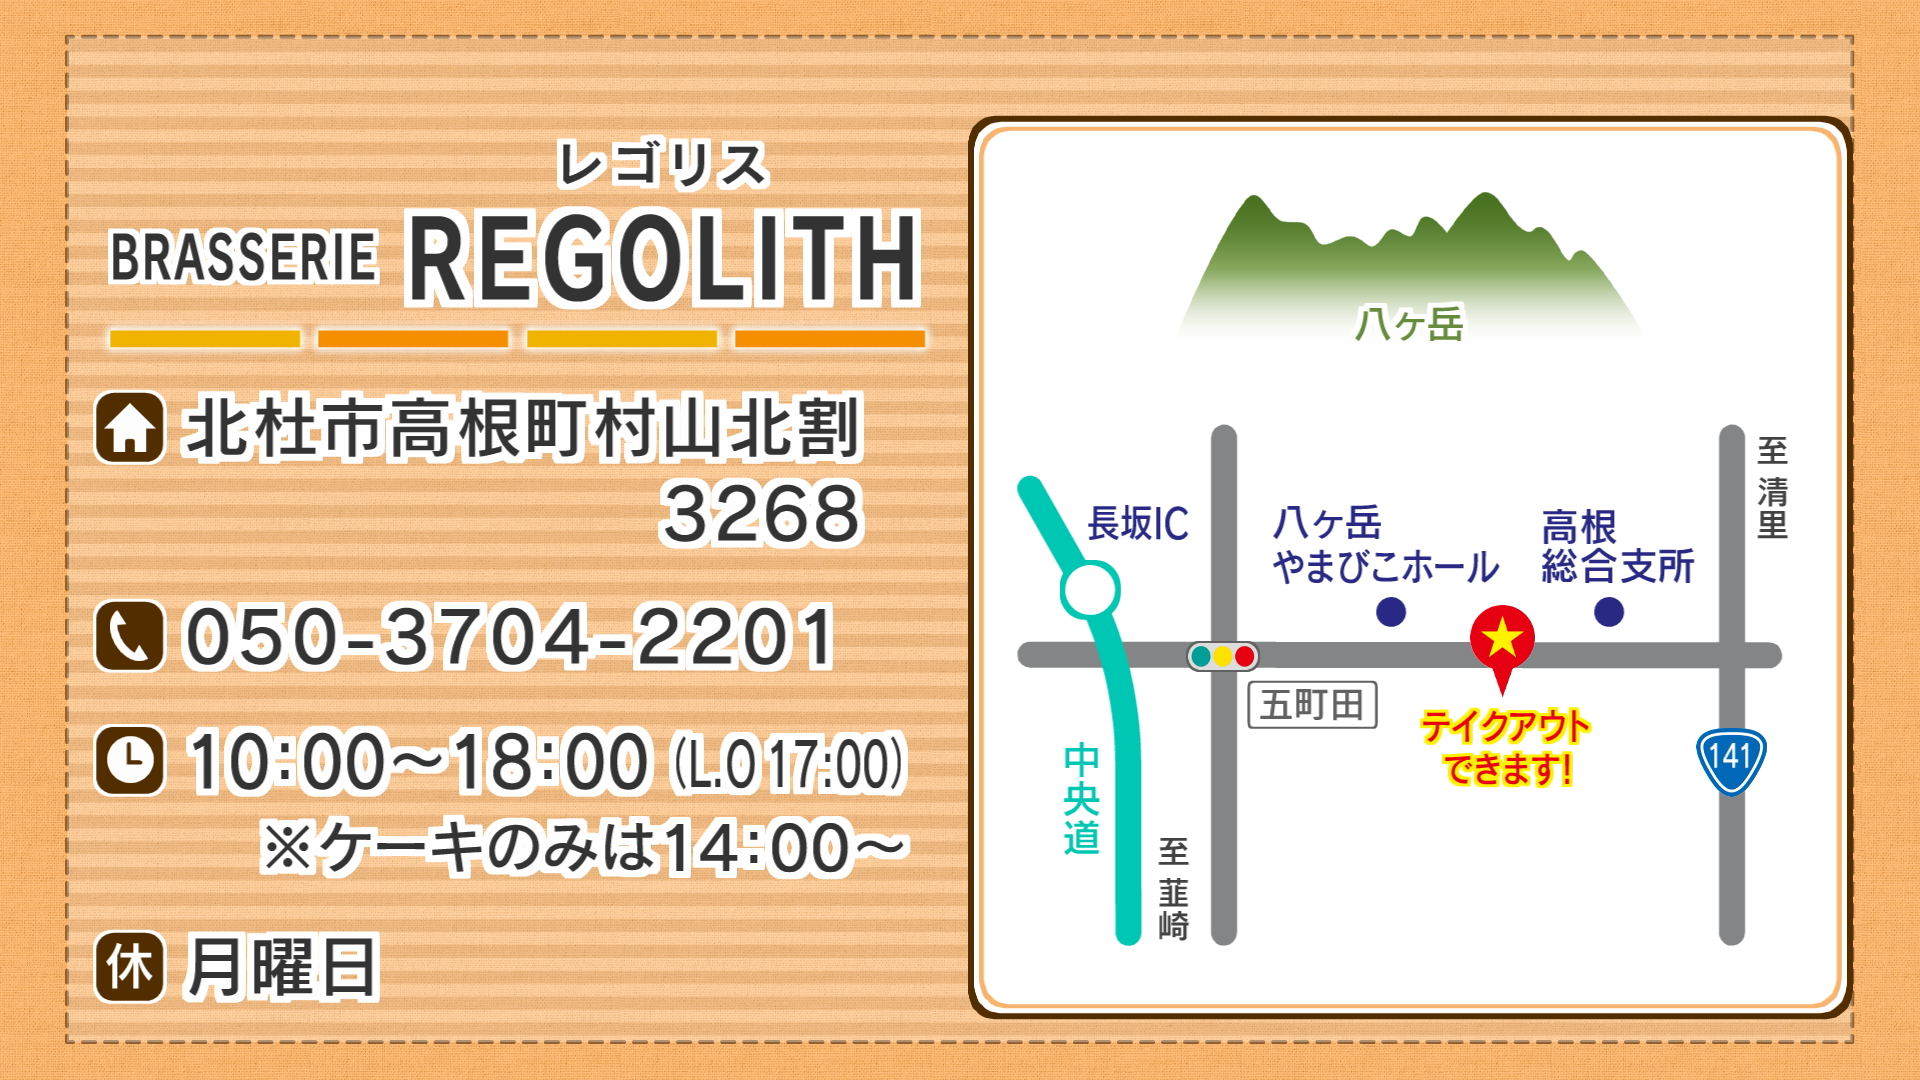 25 ++ regolith 意味 134230Regolith breccia 意味